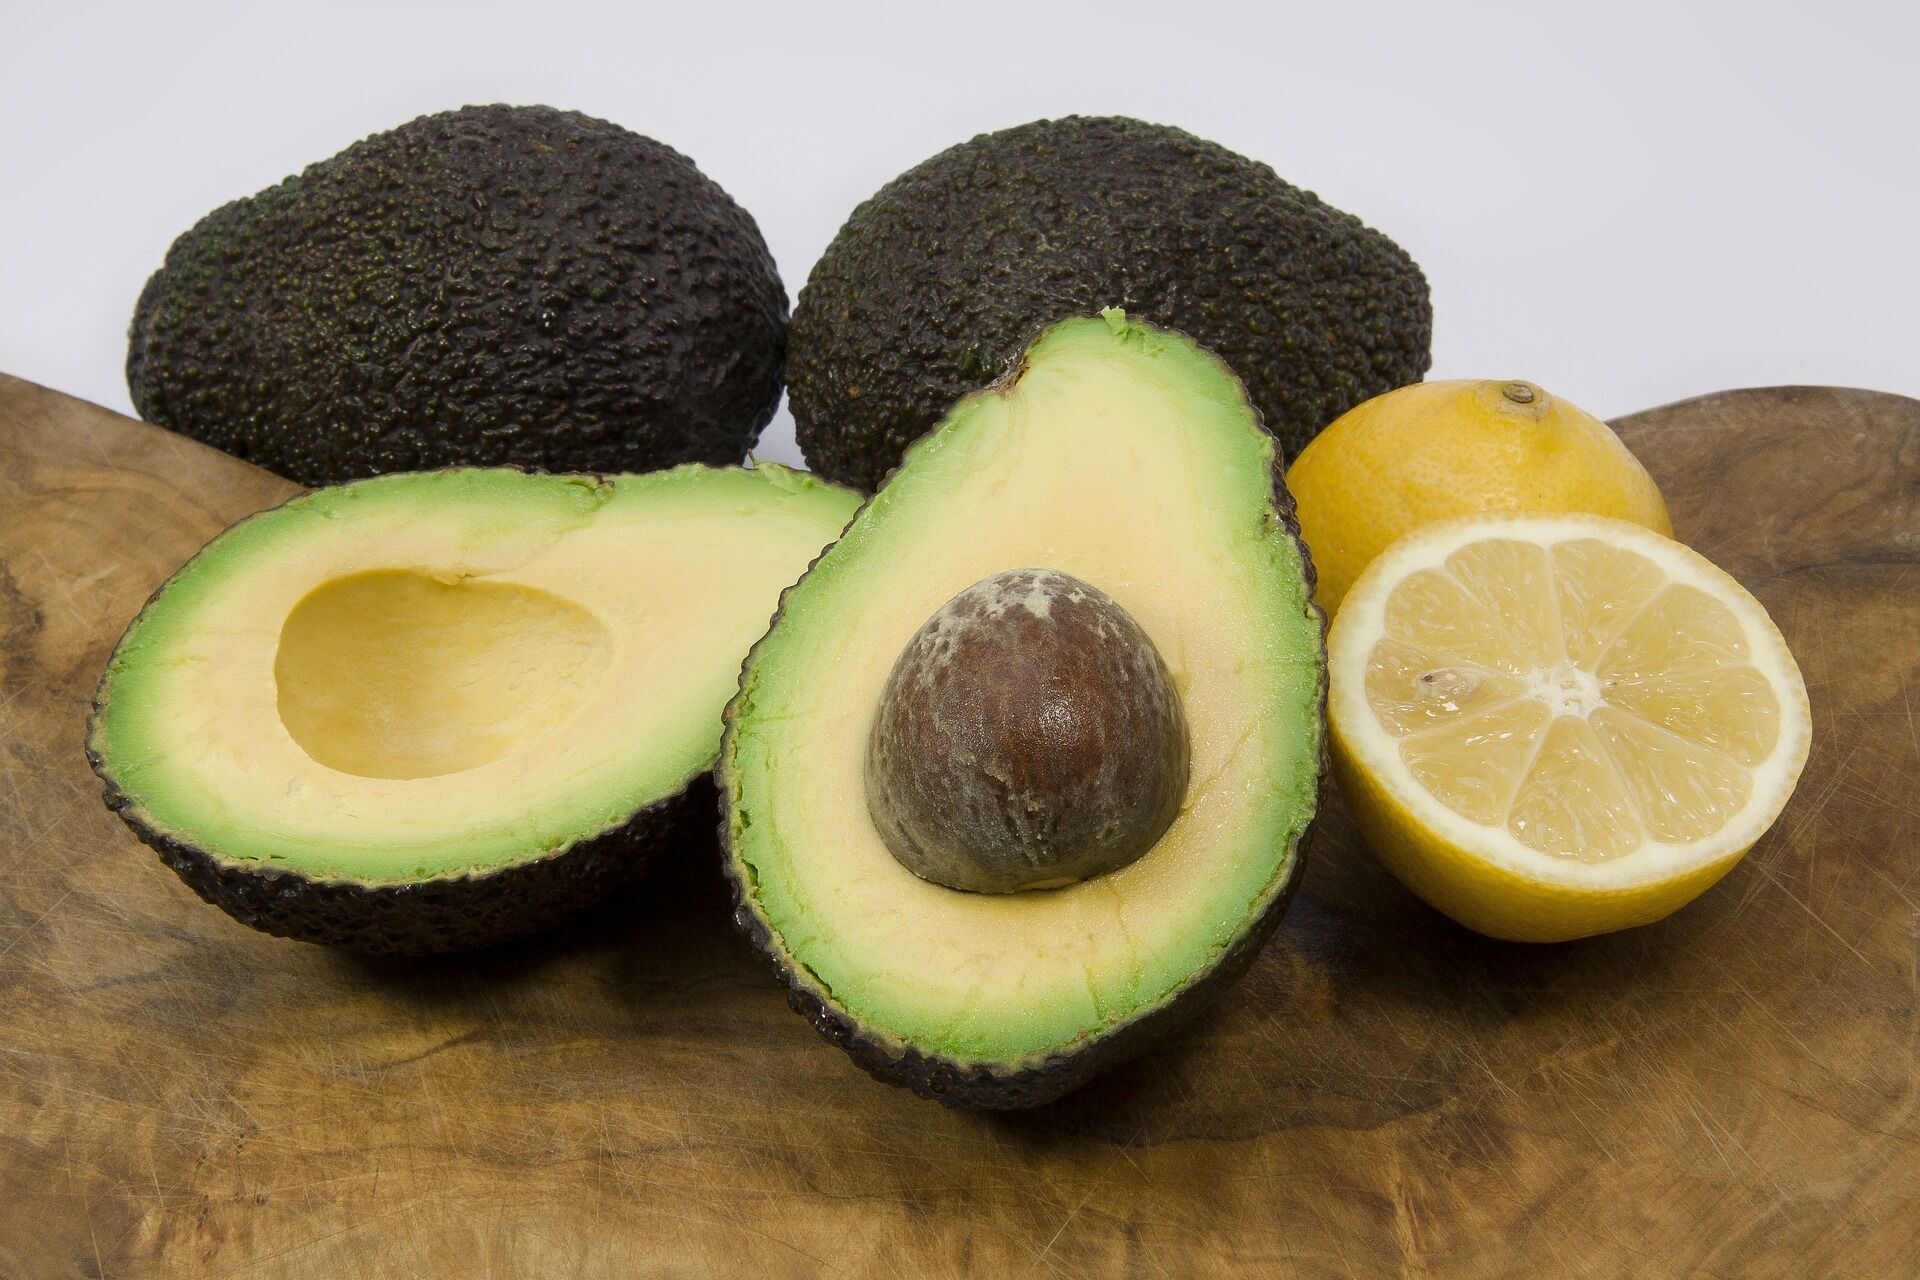 Як вибрати найбільш стиглий авокадо в магазині та прискорити дозрівання незрілих плодів